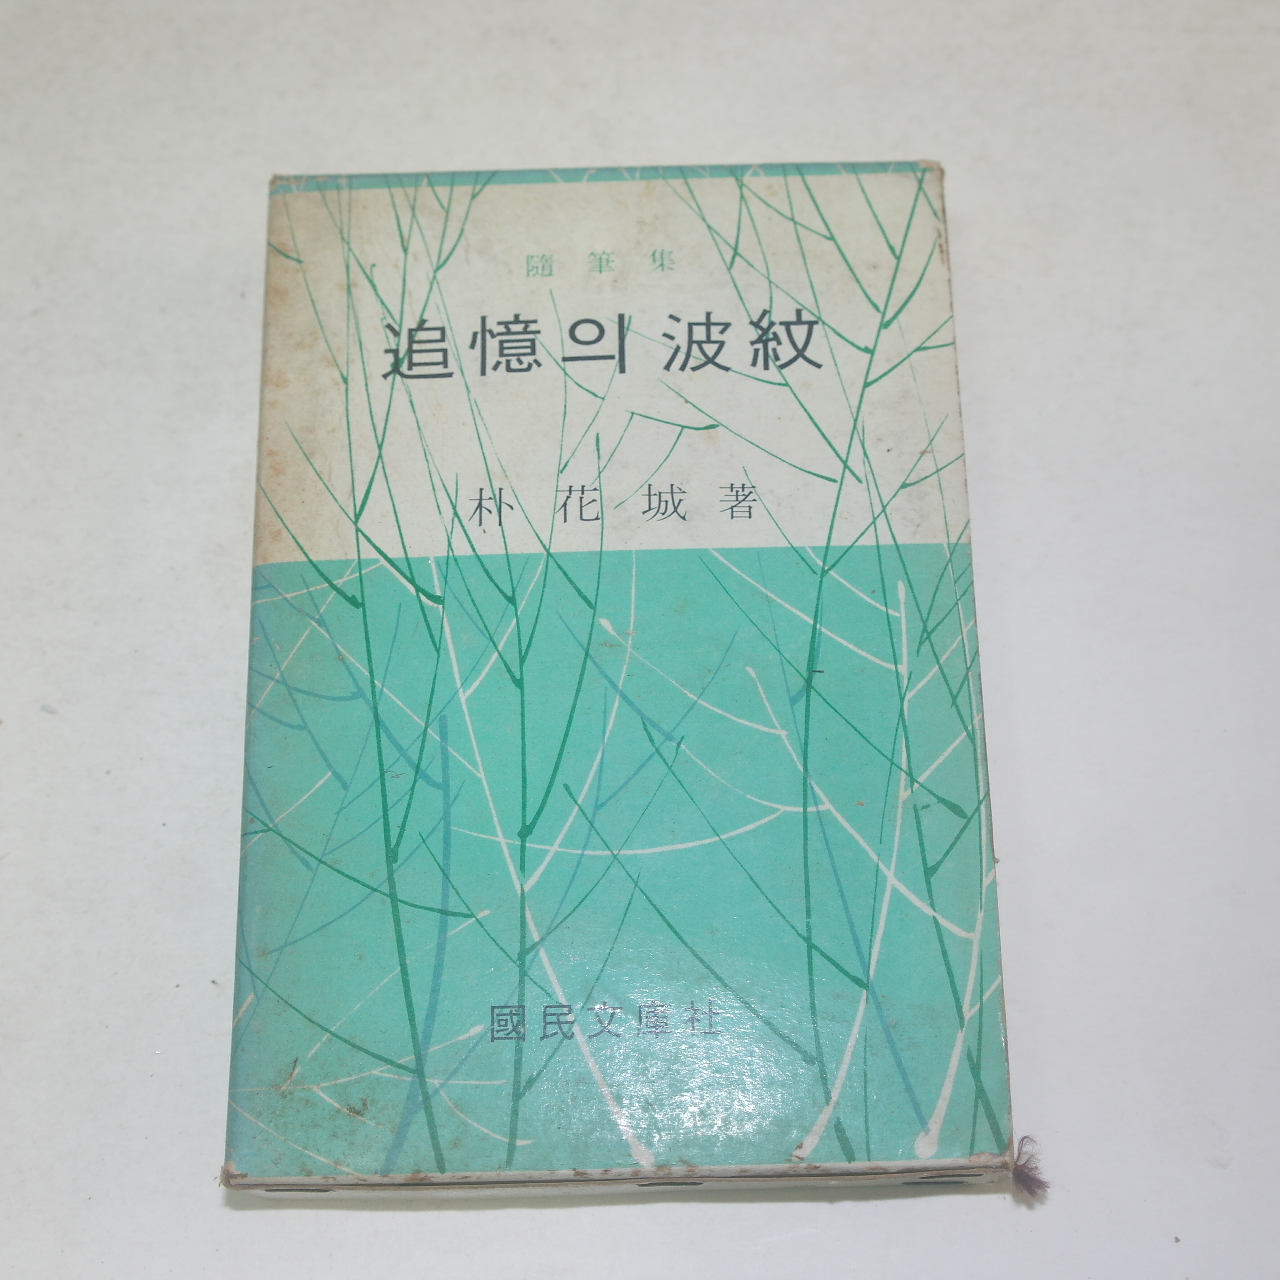 1969년 박화성(朴花城) 추억의 파문(波紋)